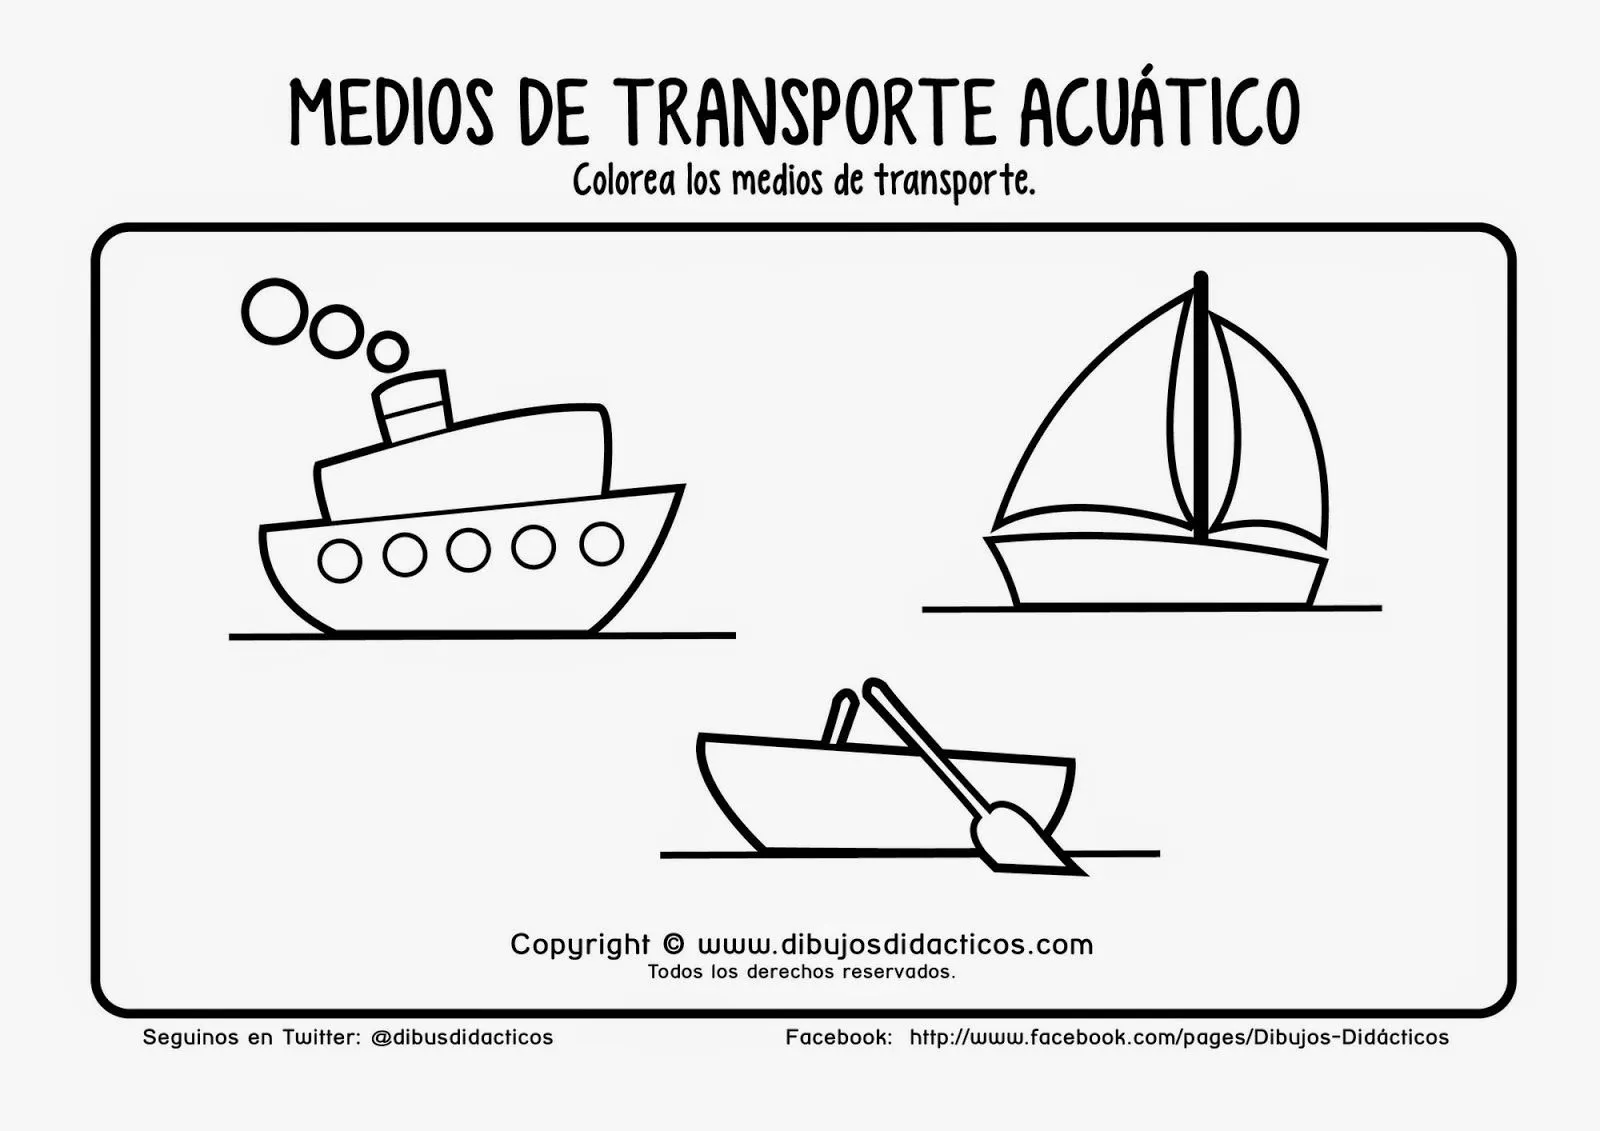 Medios de transporte acuaticos, Medios de transporte, Transporte